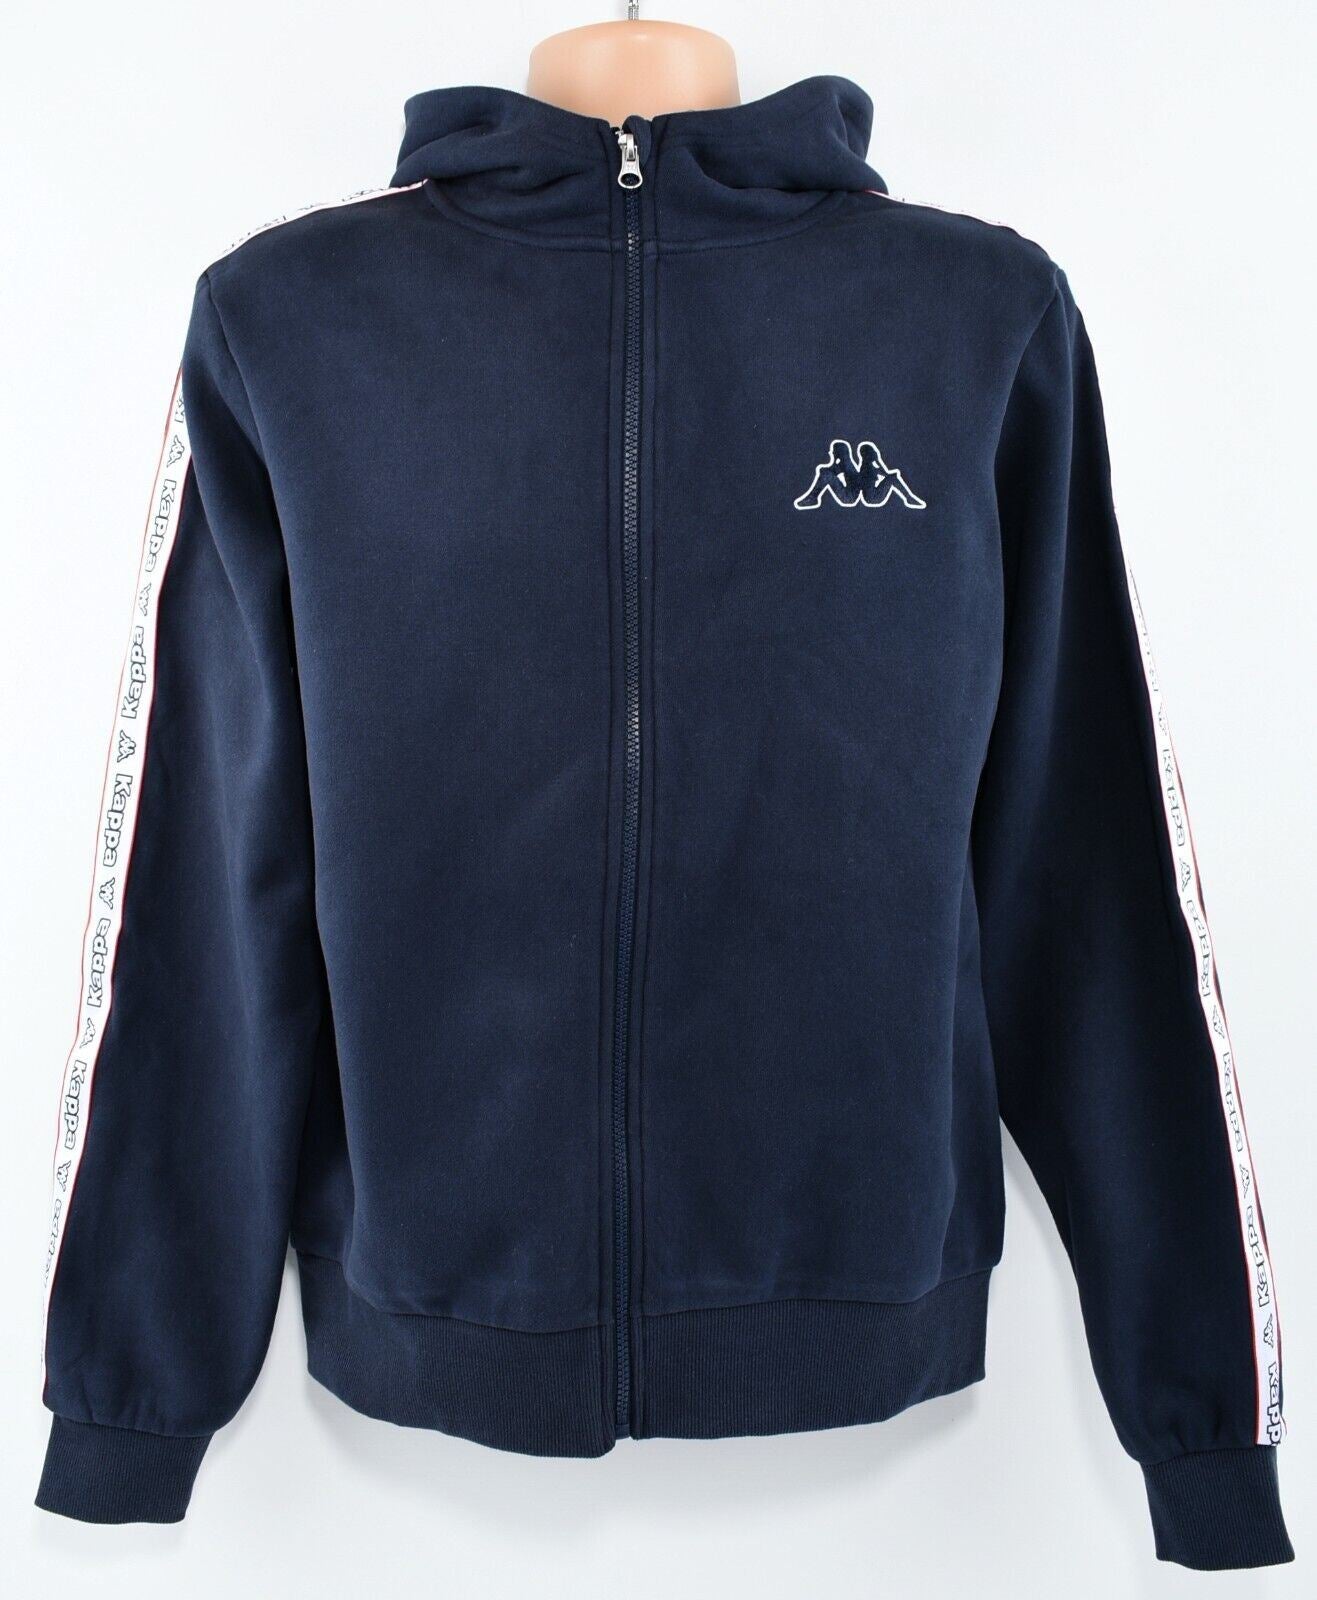 KAPPA Men's Full Zip Hoodie Jacket, Sleeve Logo Tape, Navy Blue, size M